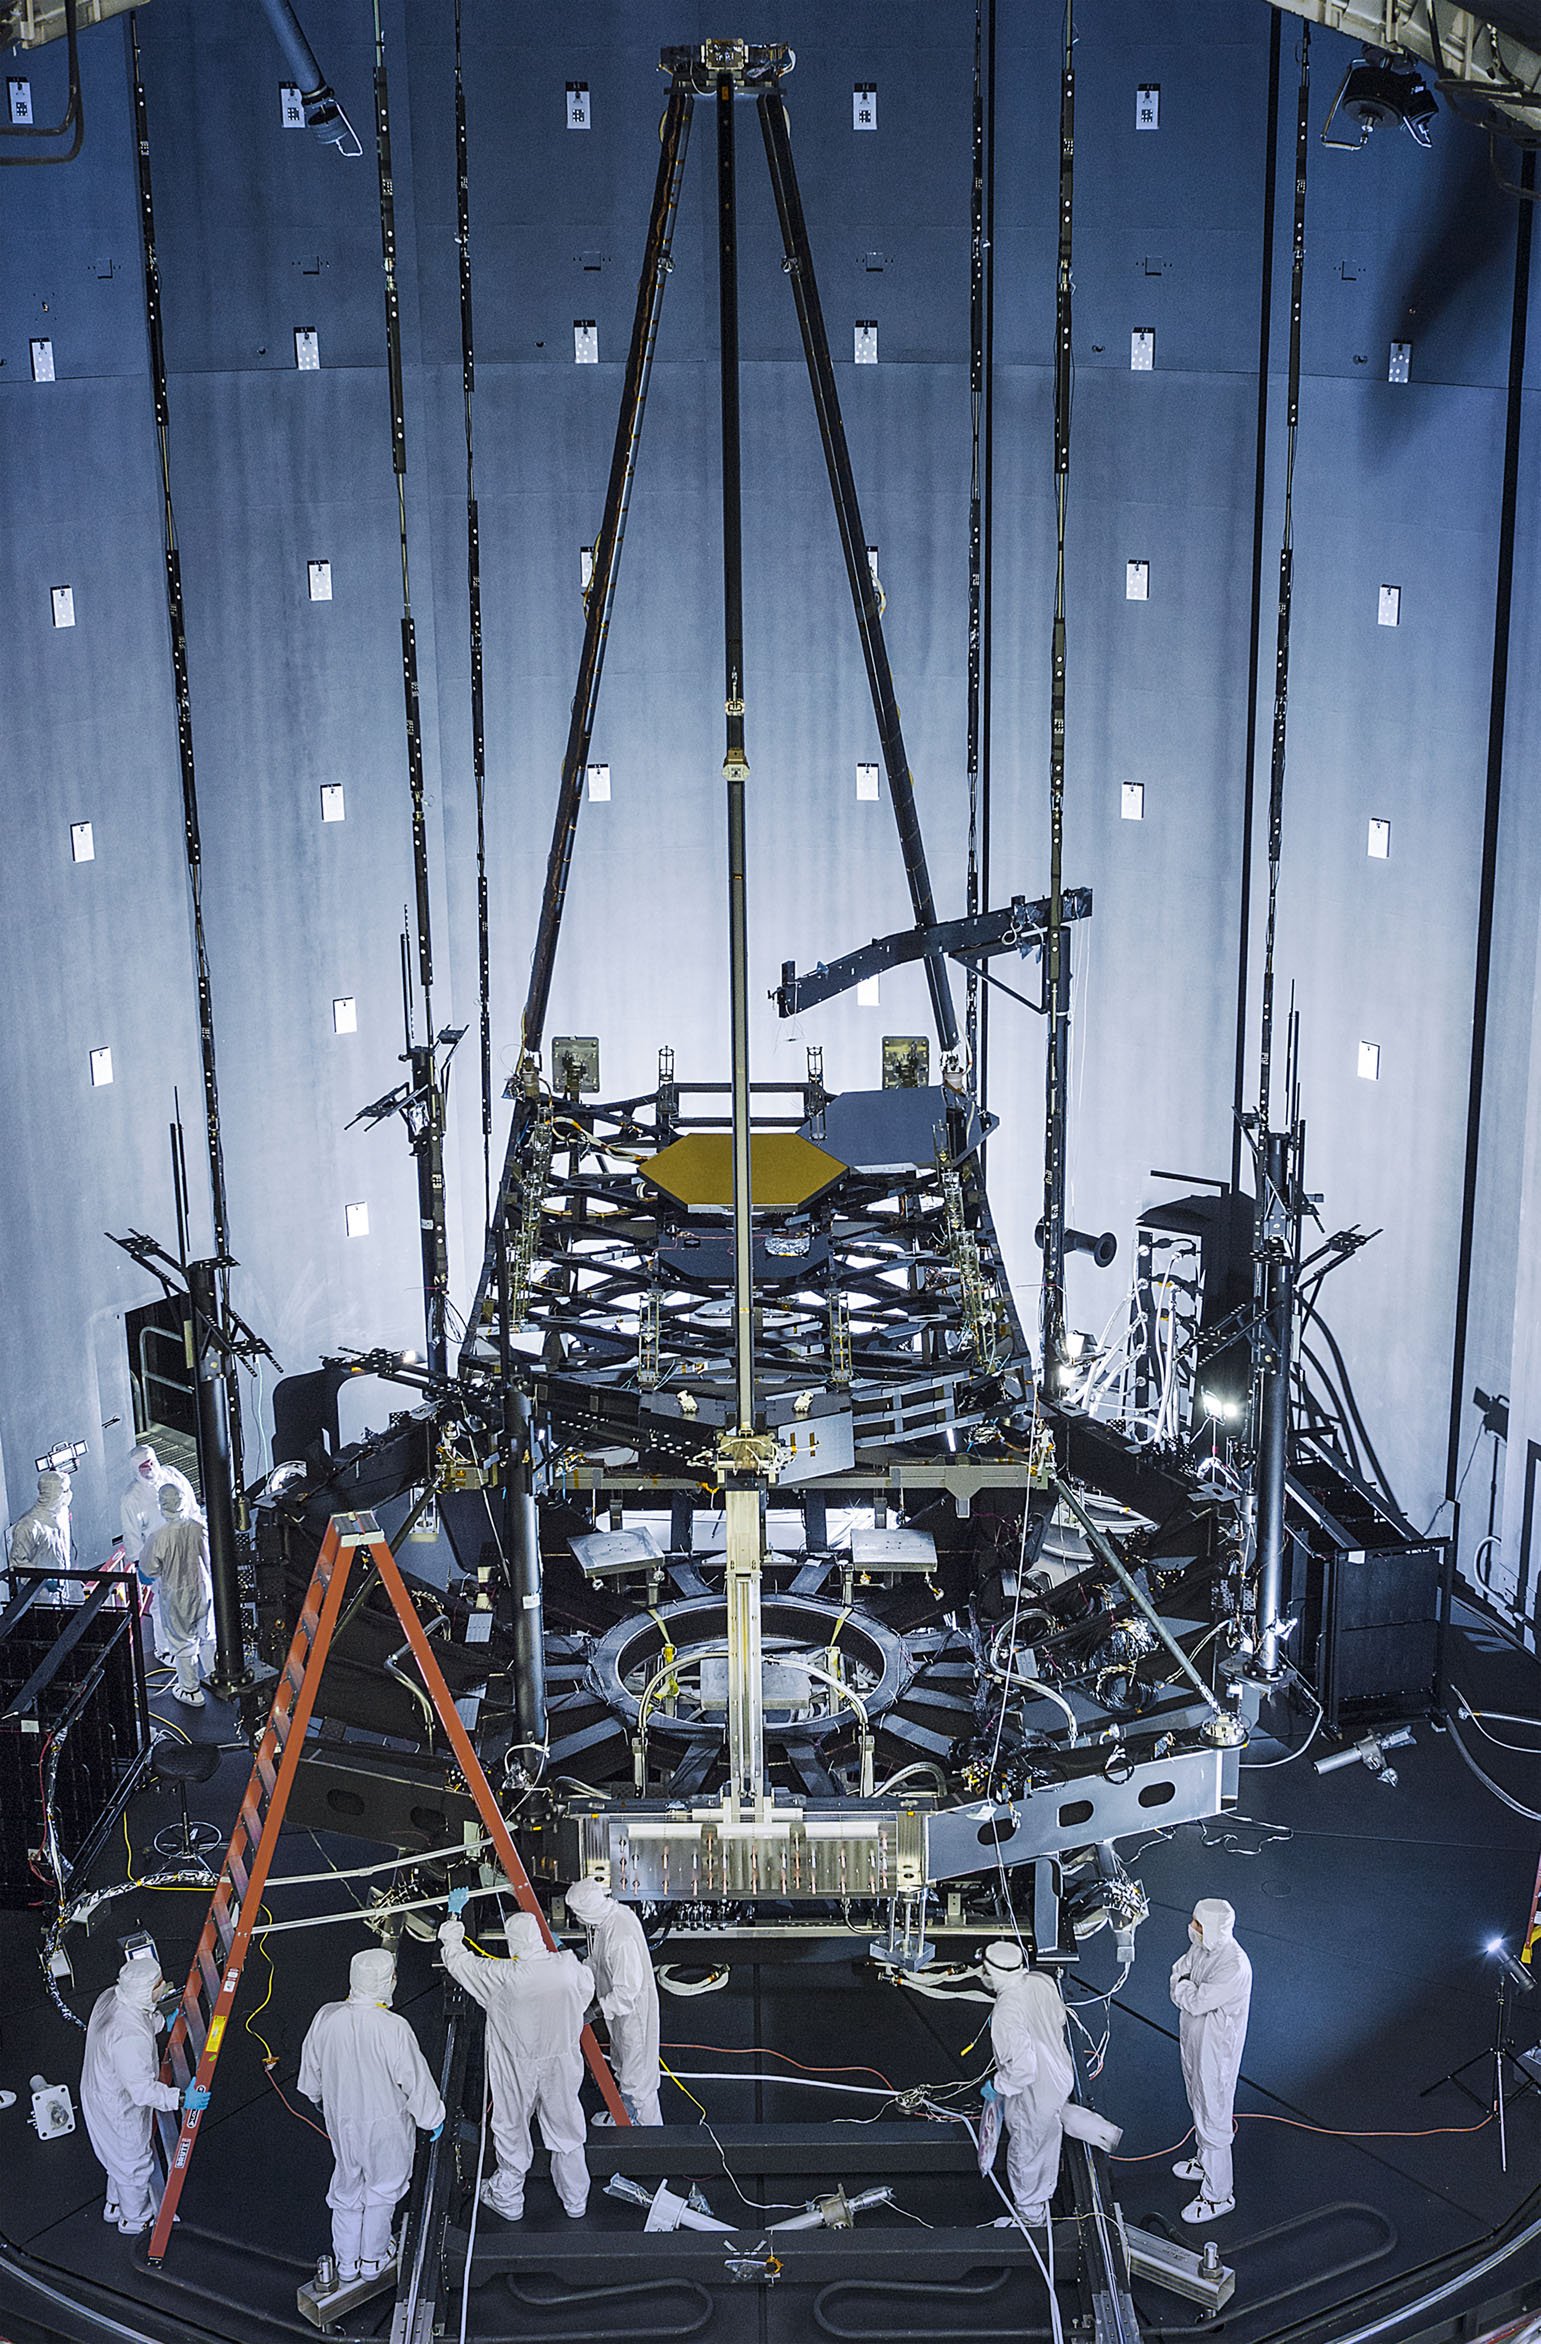 Die Spiegel des künftigen Weltraumteleskops werden in einer riesigen Vakuumkammer im Johnson Space Center der Nasa in Houston installiert. Gut zu erkennen ist im Hintergrund die 6,5 m lange Trägerkonstruktion des Teleskops.